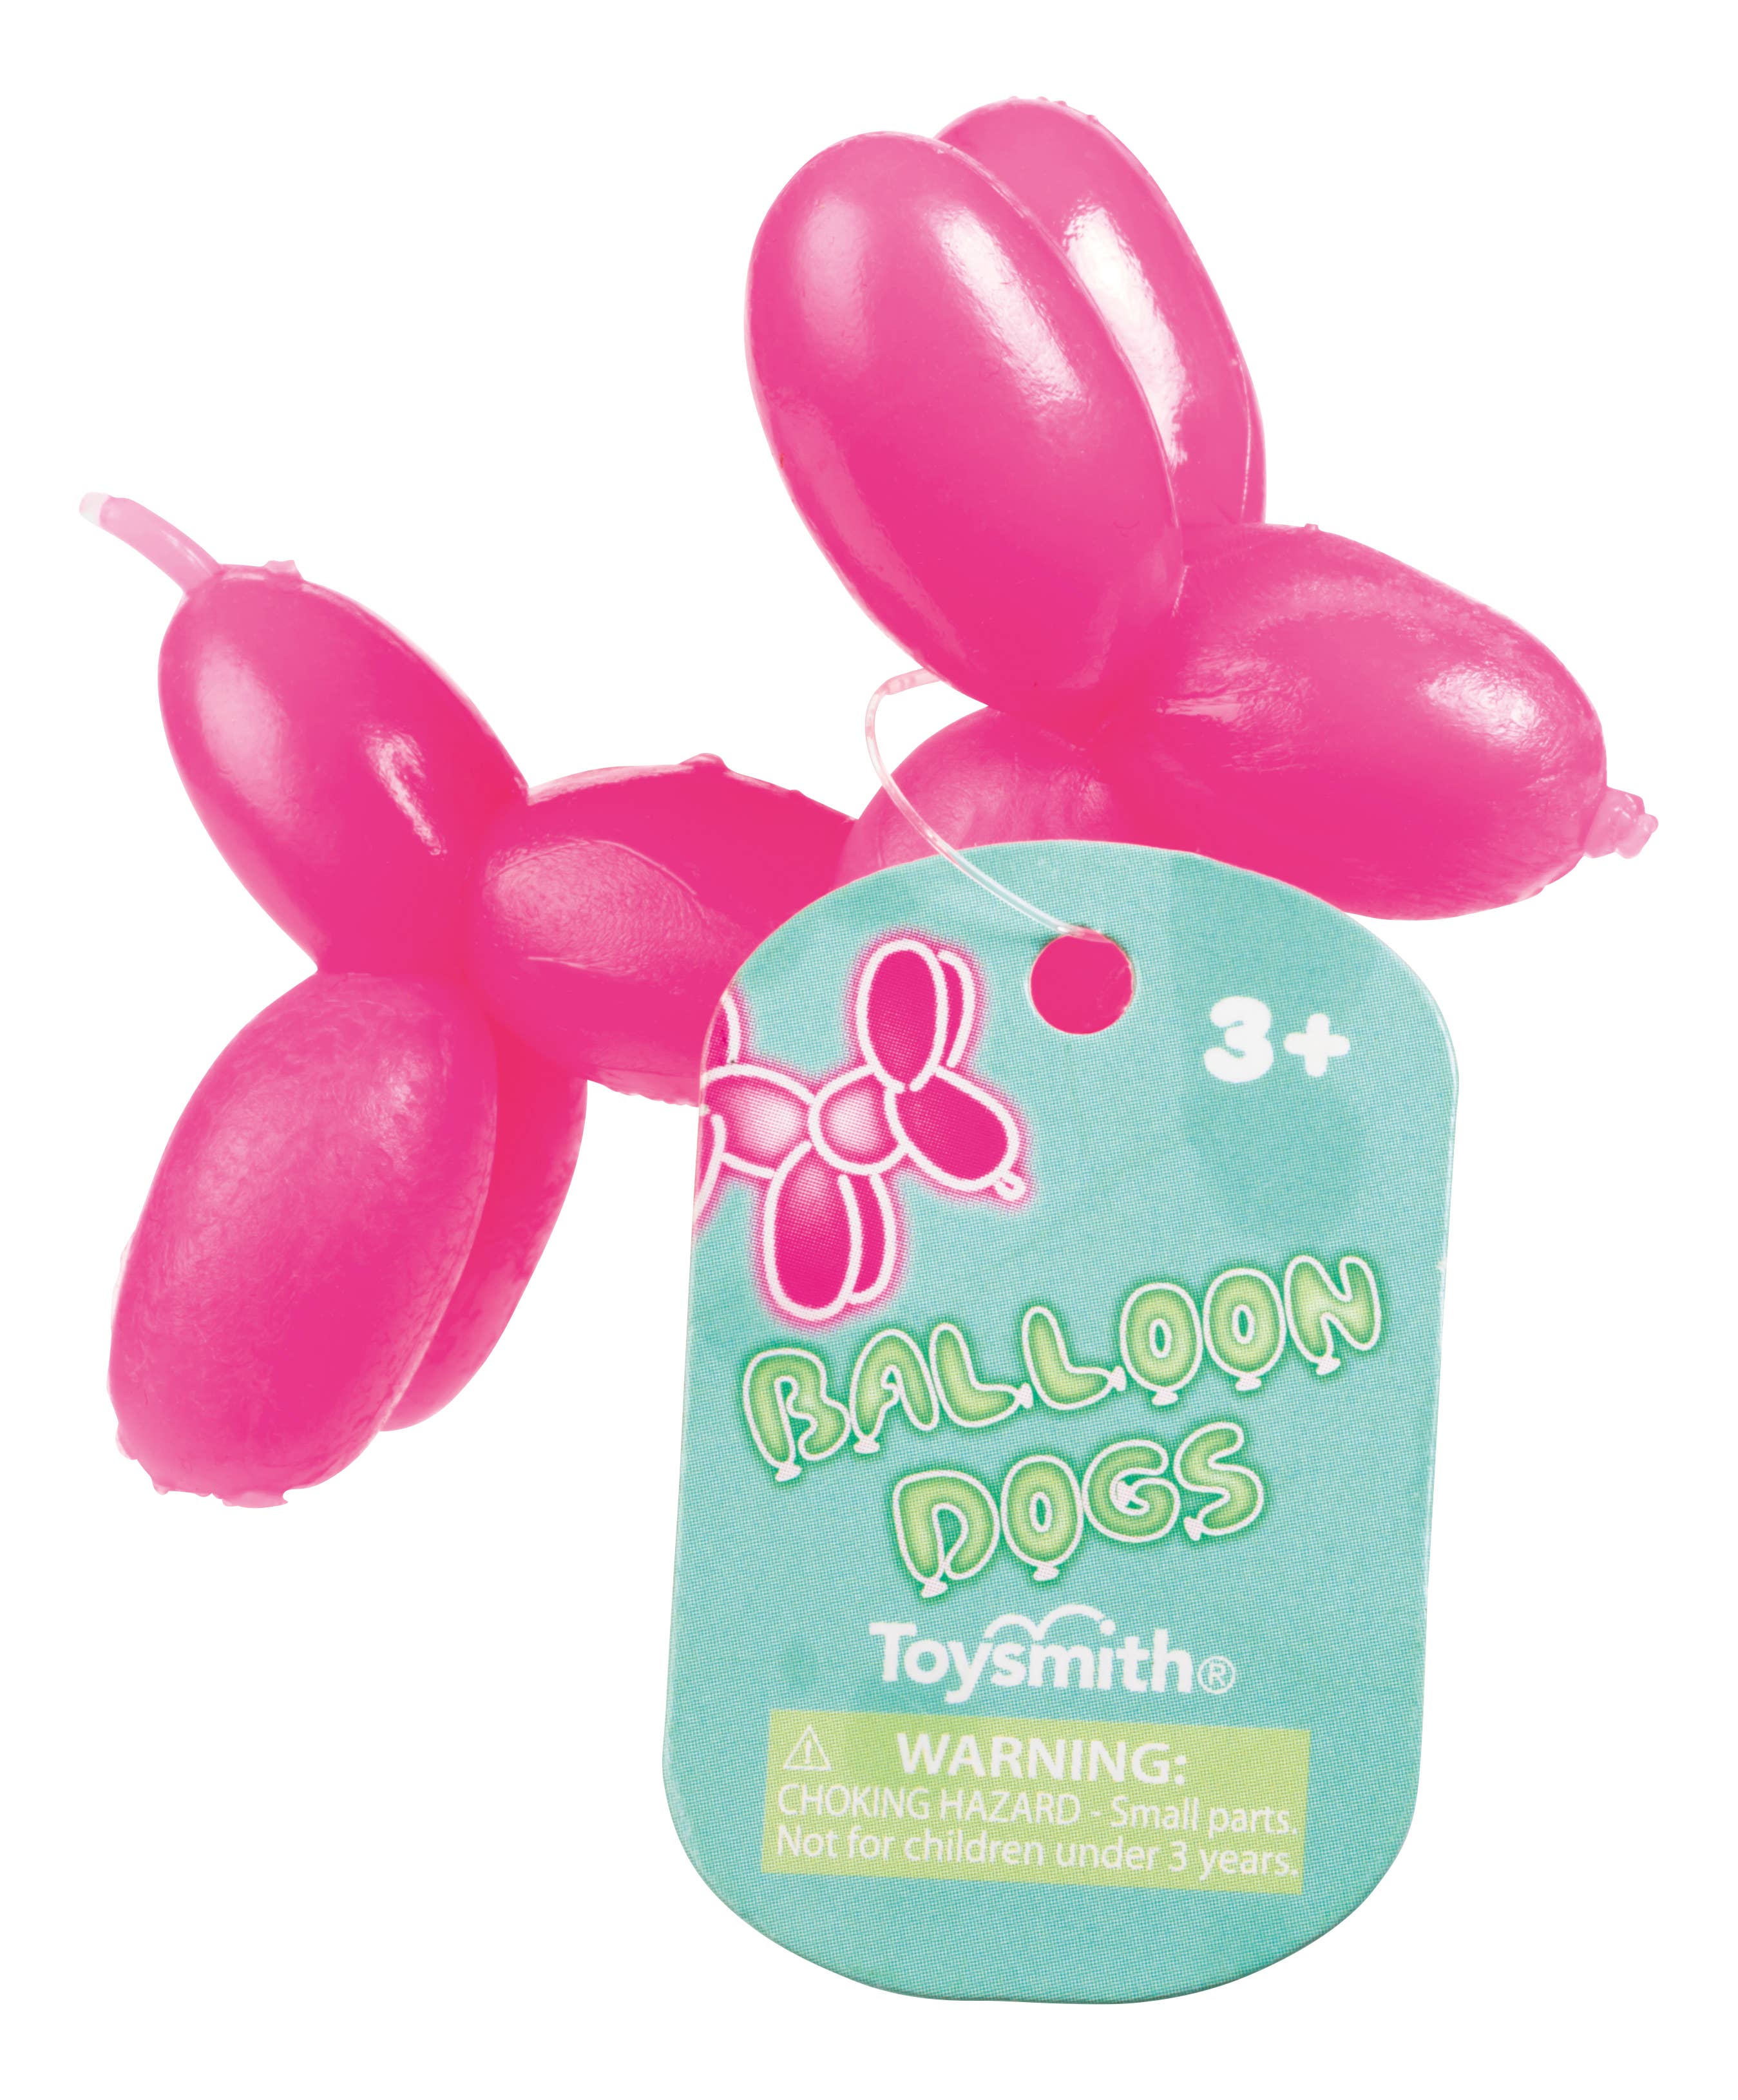 Balloon Dogs